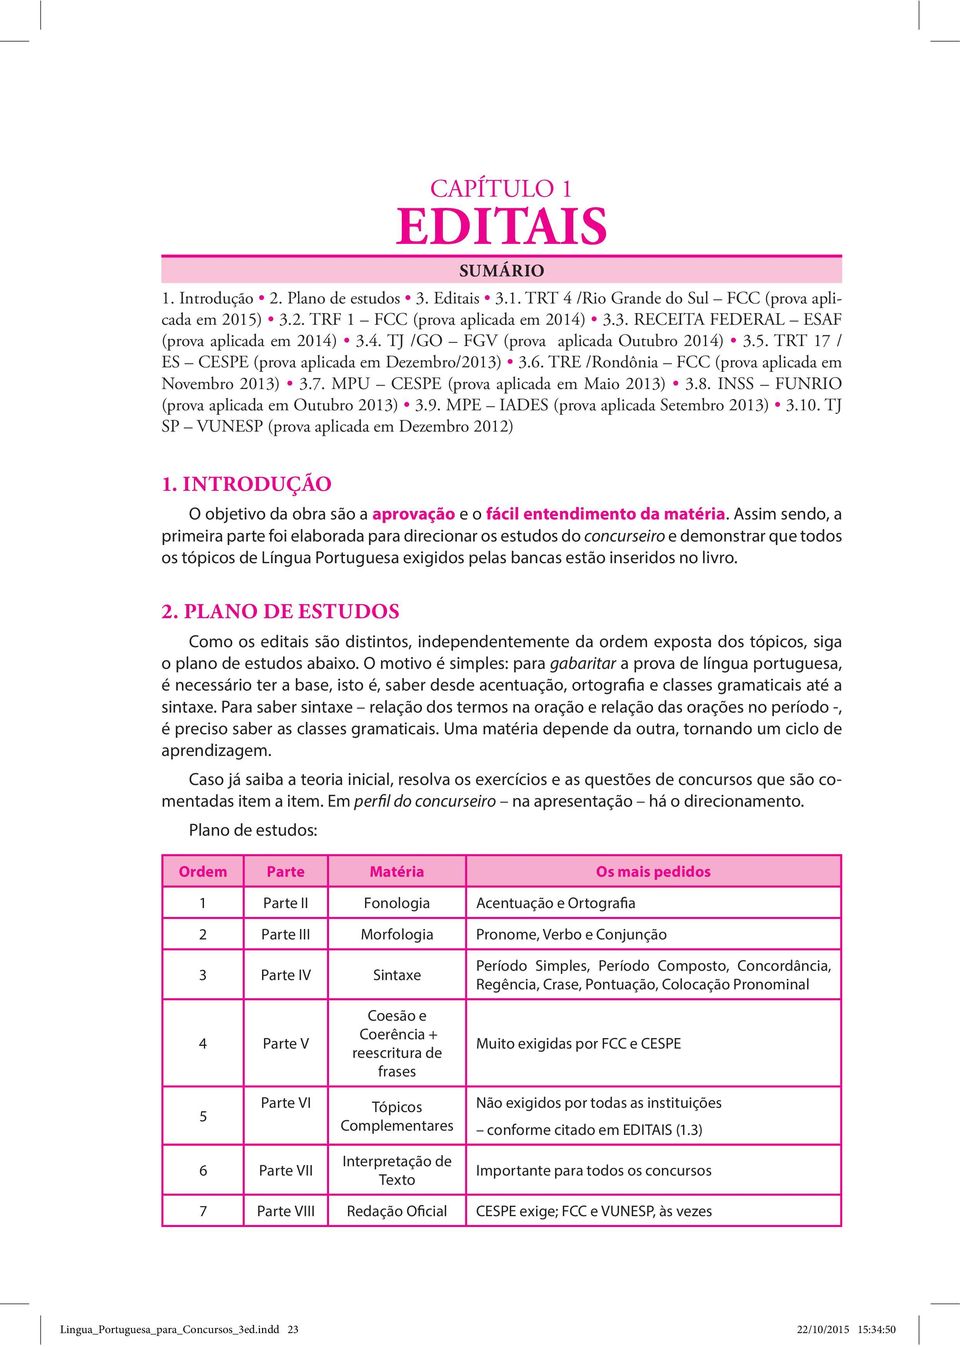 TRE /Rondônia FCC (prova aplicada em Novembro 2013) 3.7. MPU CESPE (prova aplicada em Maio 2013) 3.8. INSS FUNRIO (prova aplicada em Outubro 2013) 3.9. MPE IADES (prova aplicada Setembro 2013) 3.10.